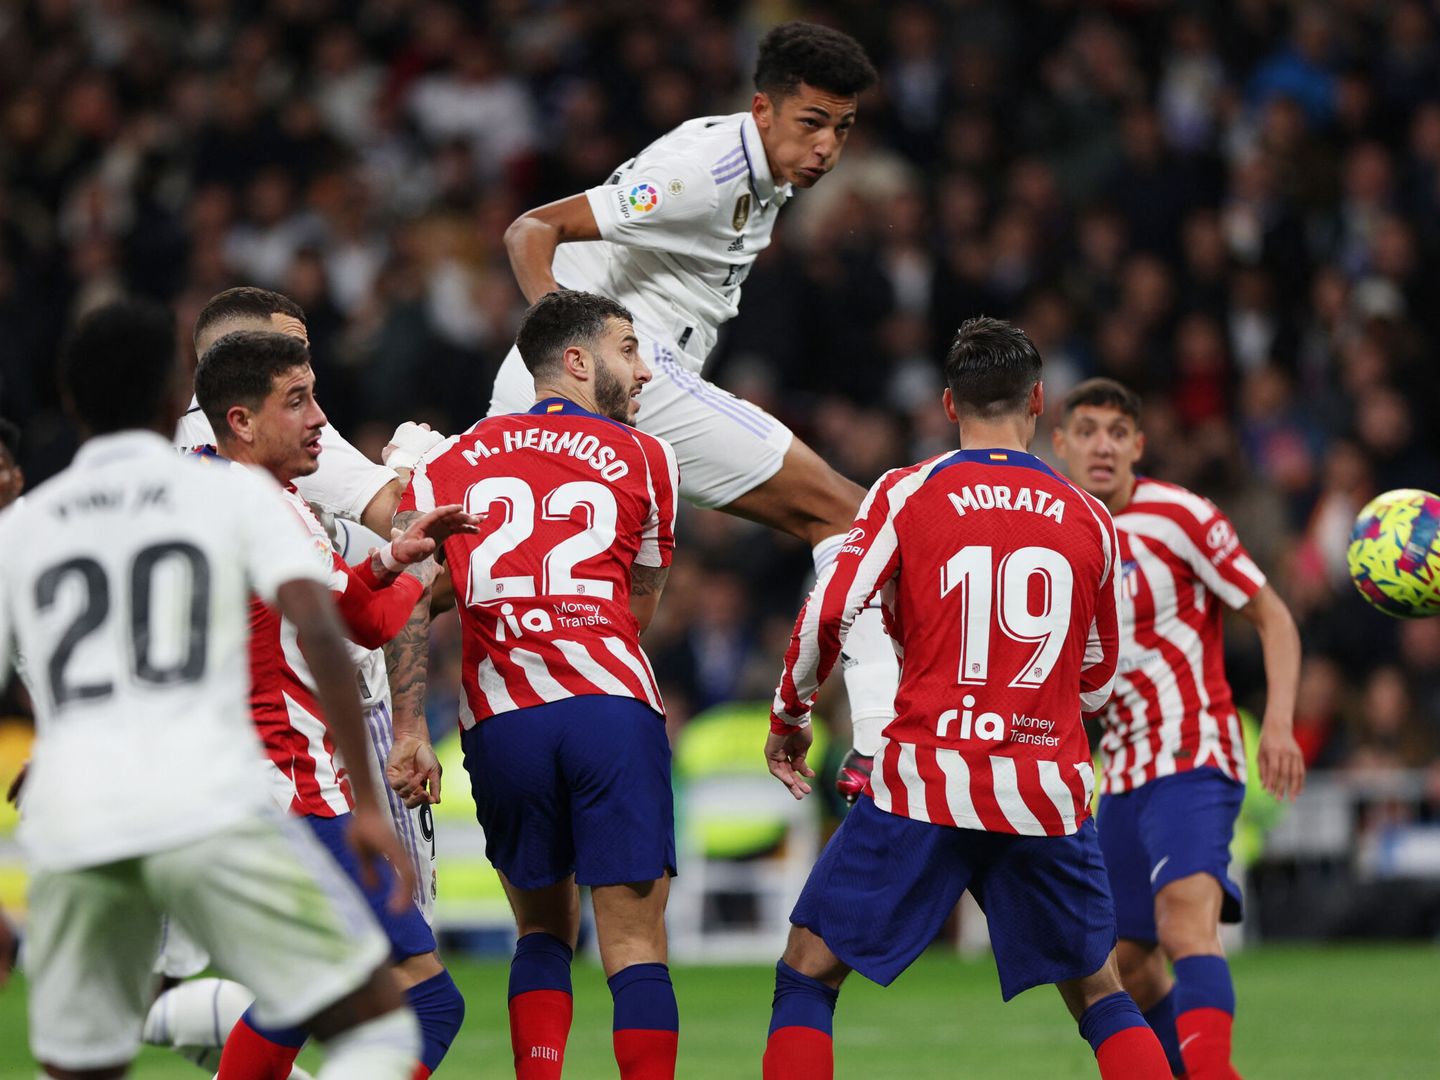 El cabezazo que acaba en gol de Álvaro Rodríguez en el derbi. (REUTERS/Violeta Santos Moura)